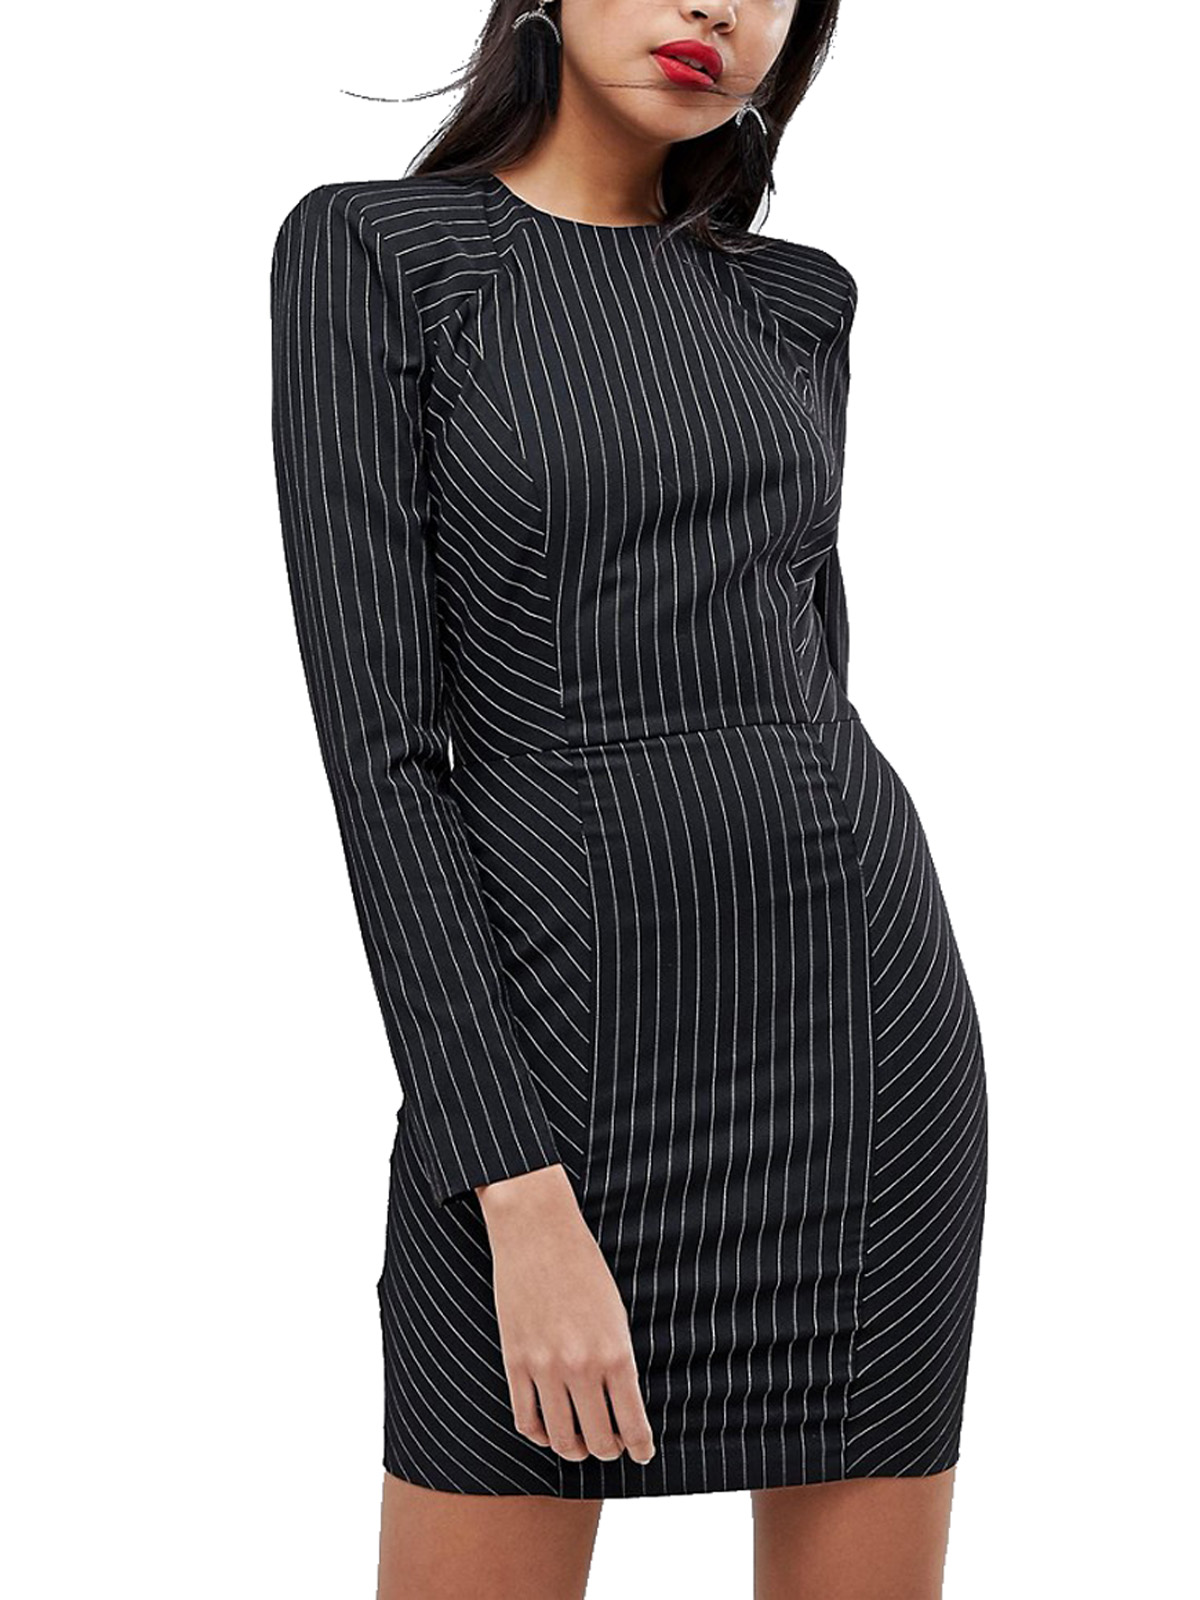 black dress with stripes